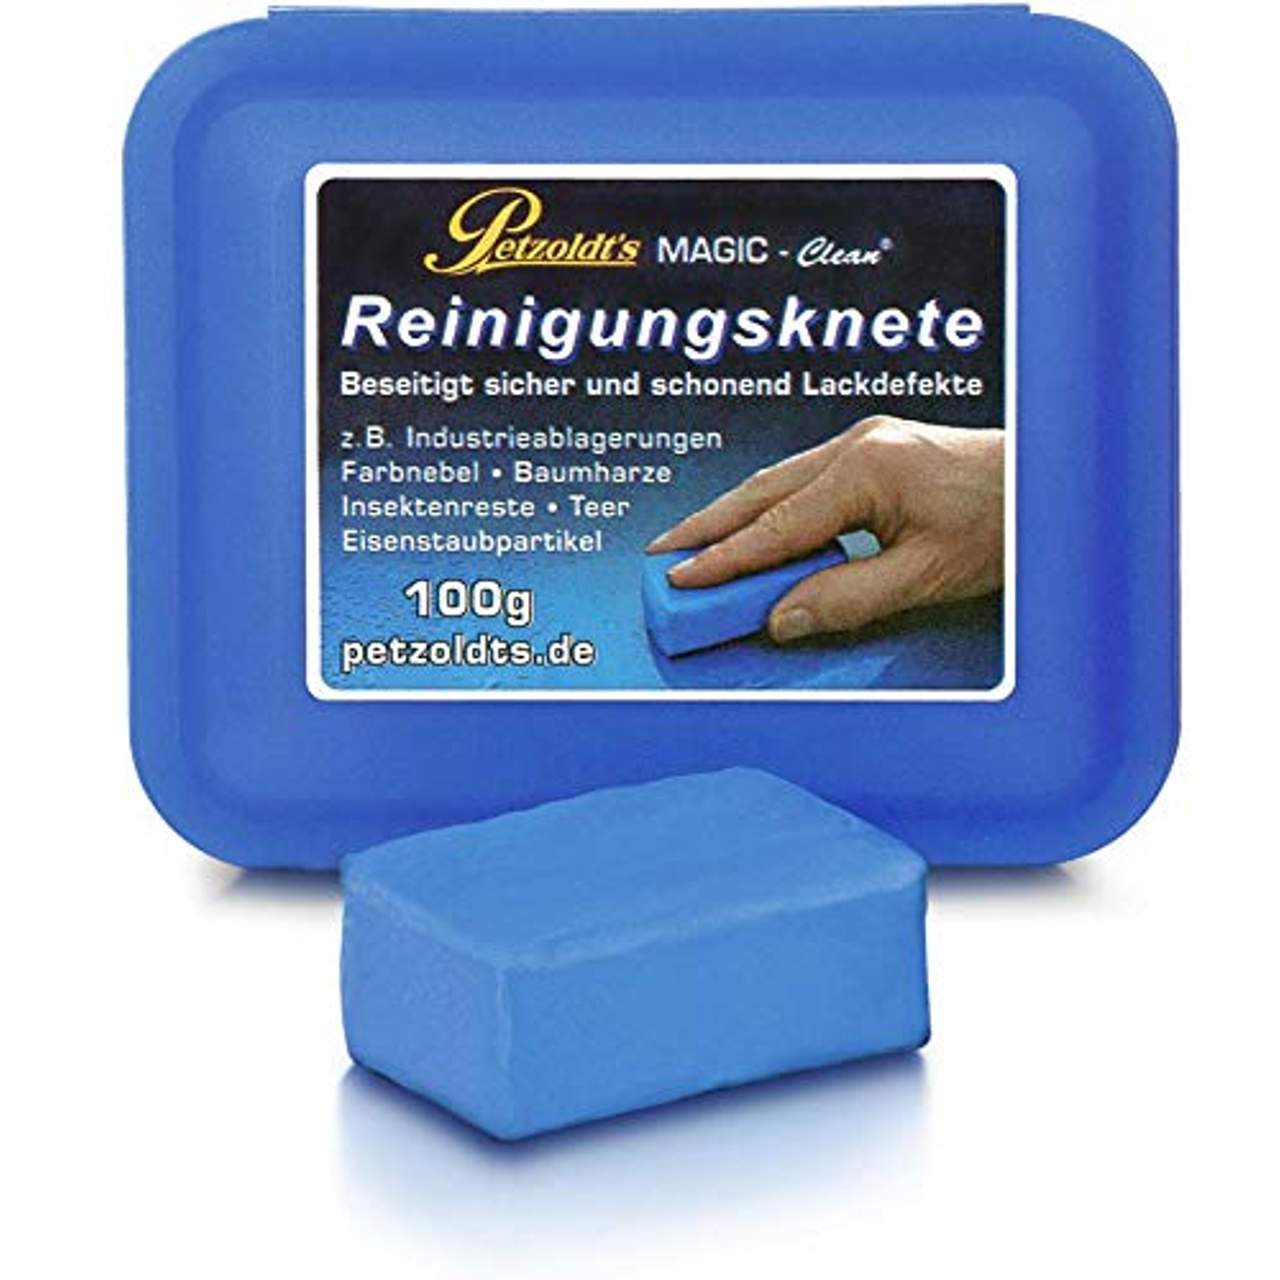 Petzoldt's Profi-Reinigungsknete MAGIC-Clean Blau mild